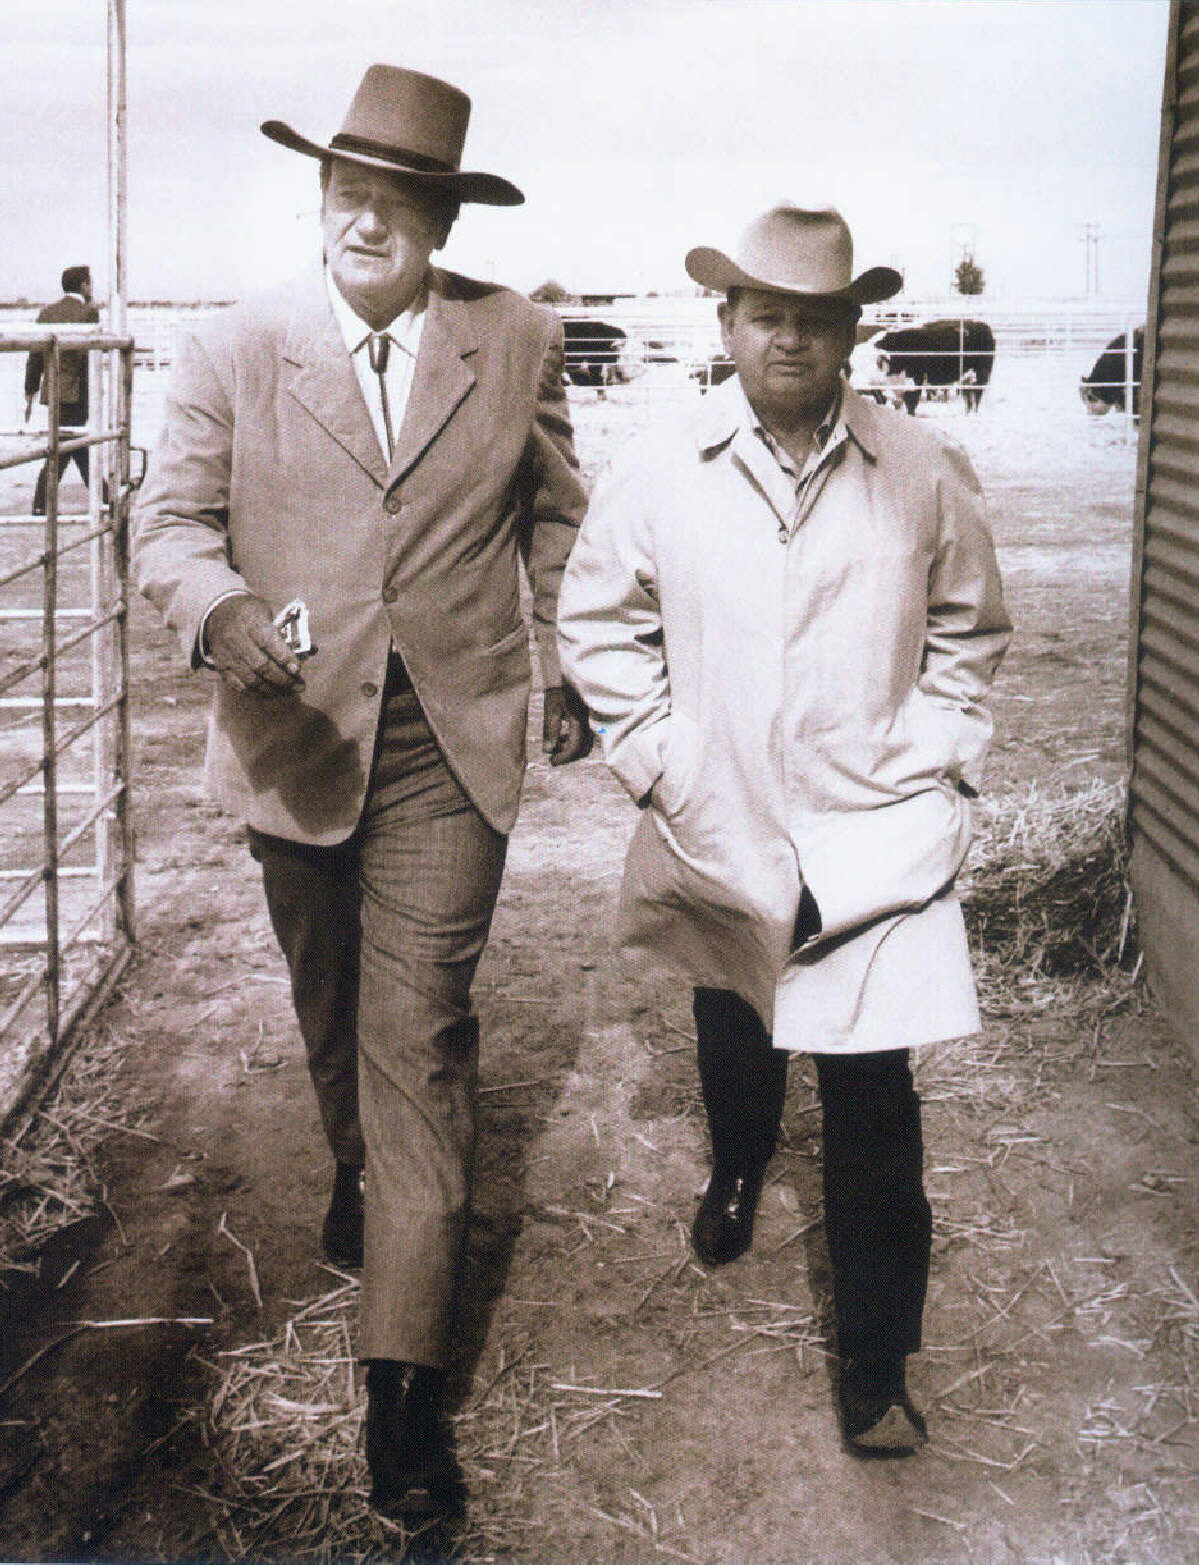 John Wayne and Louis Johnson at 26 Bar Ranch in Arizona.